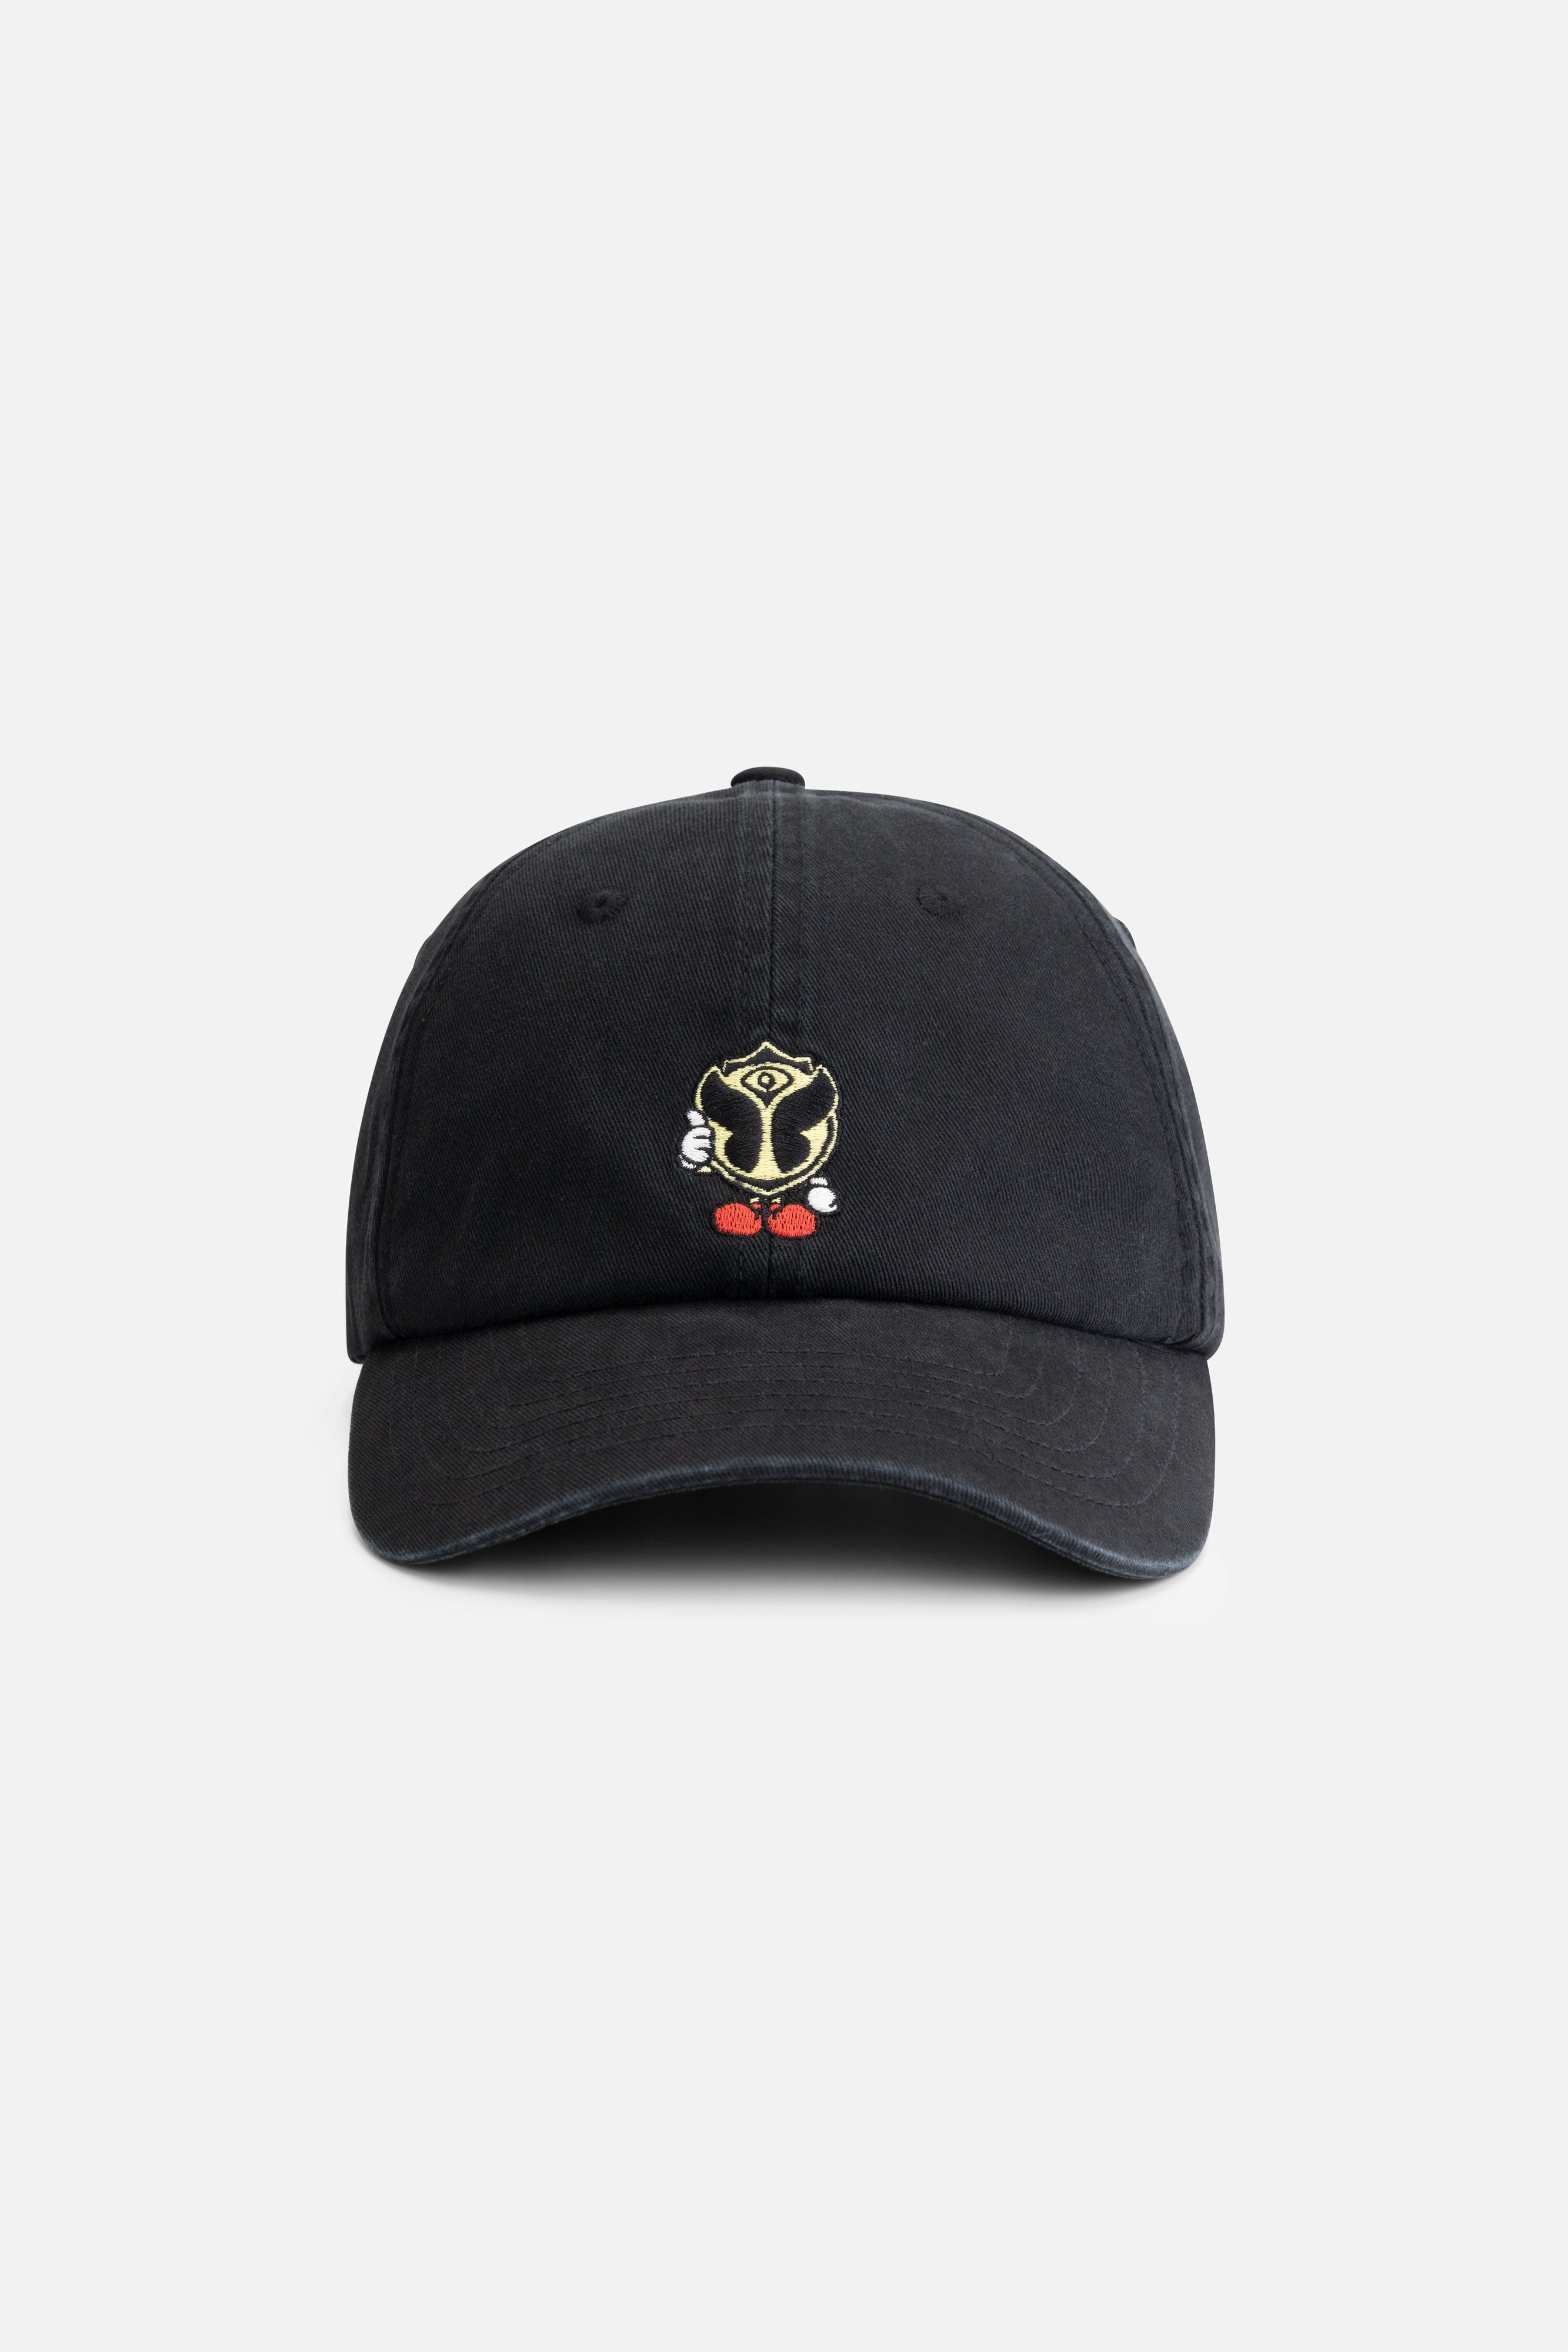 HAPPICON CAP – Tomorrowland Store